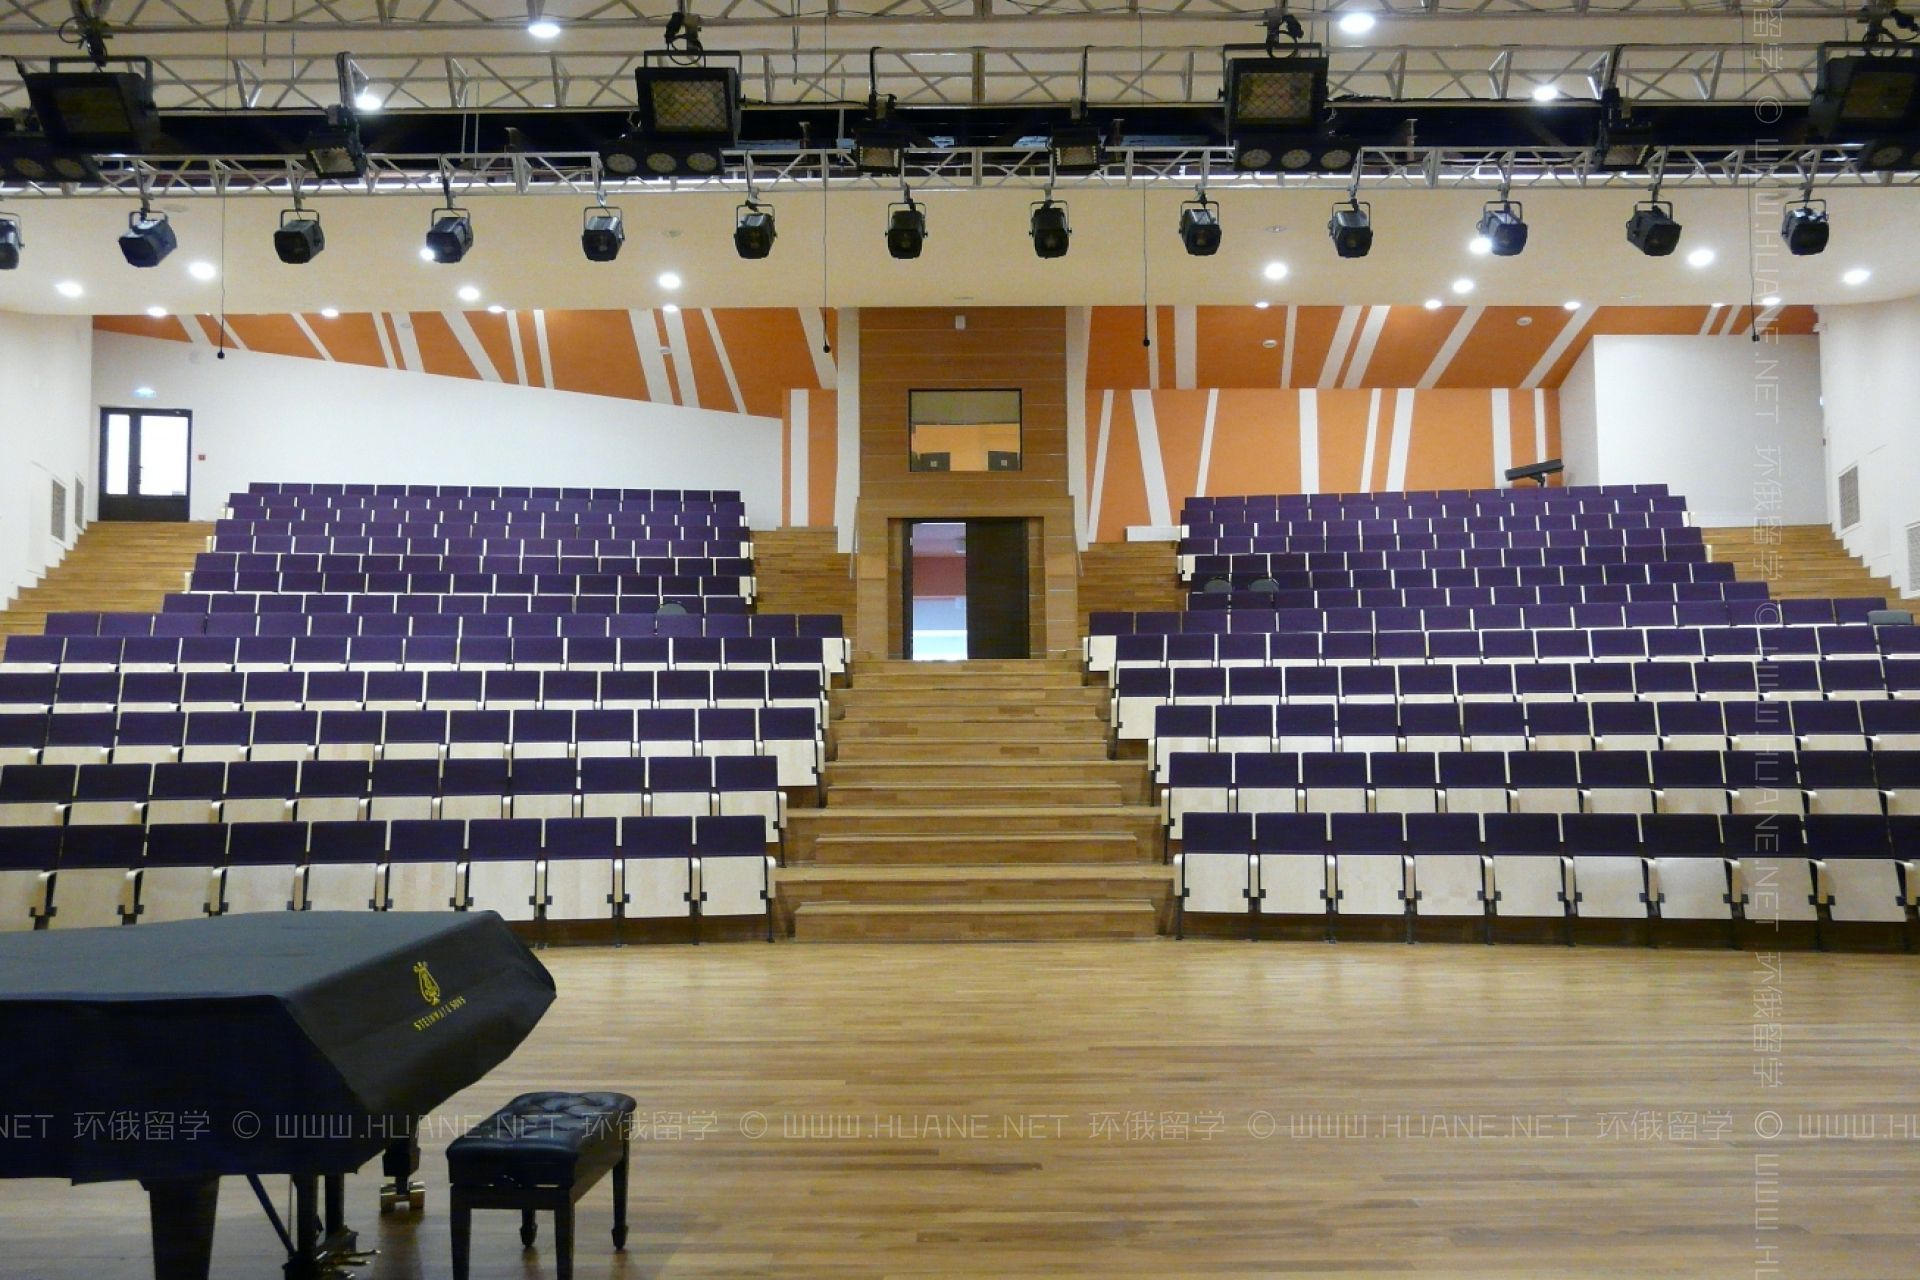 彼得罗扎沃茨克国立格拉祖诺夫音乐学院